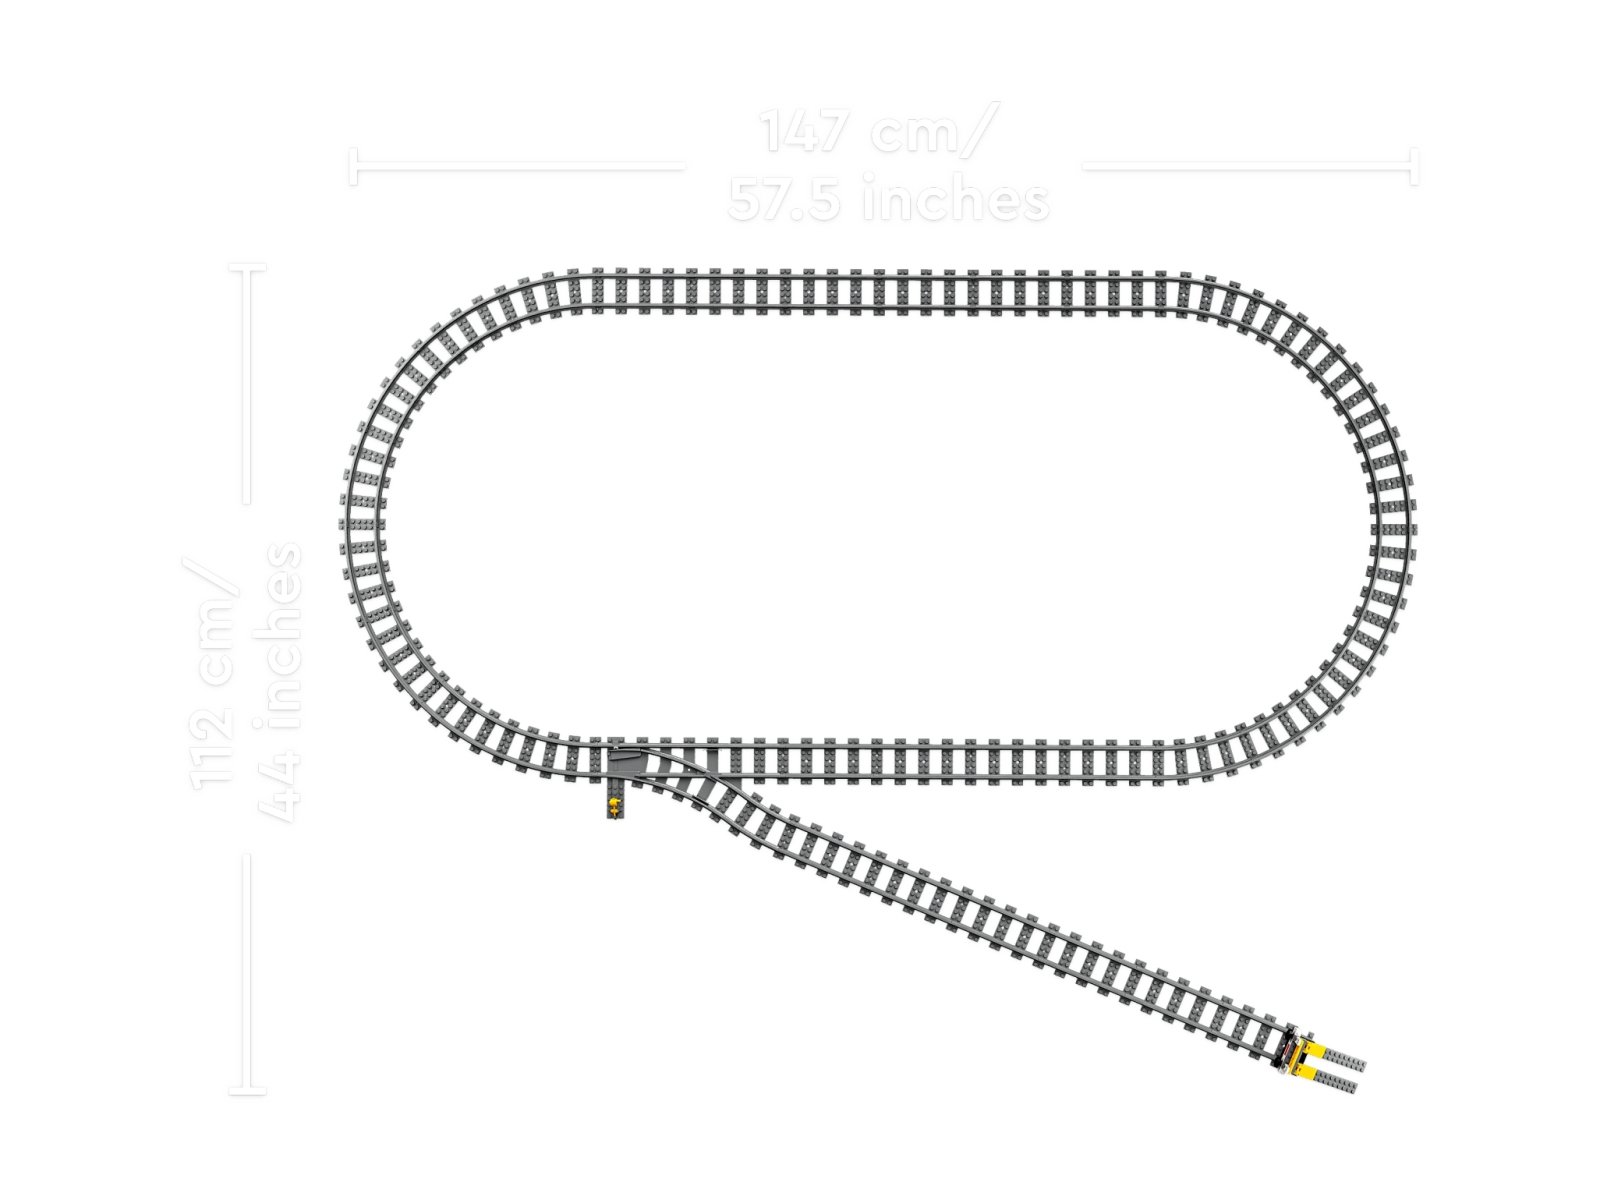 LEGO 60336 Pociąg towarowy